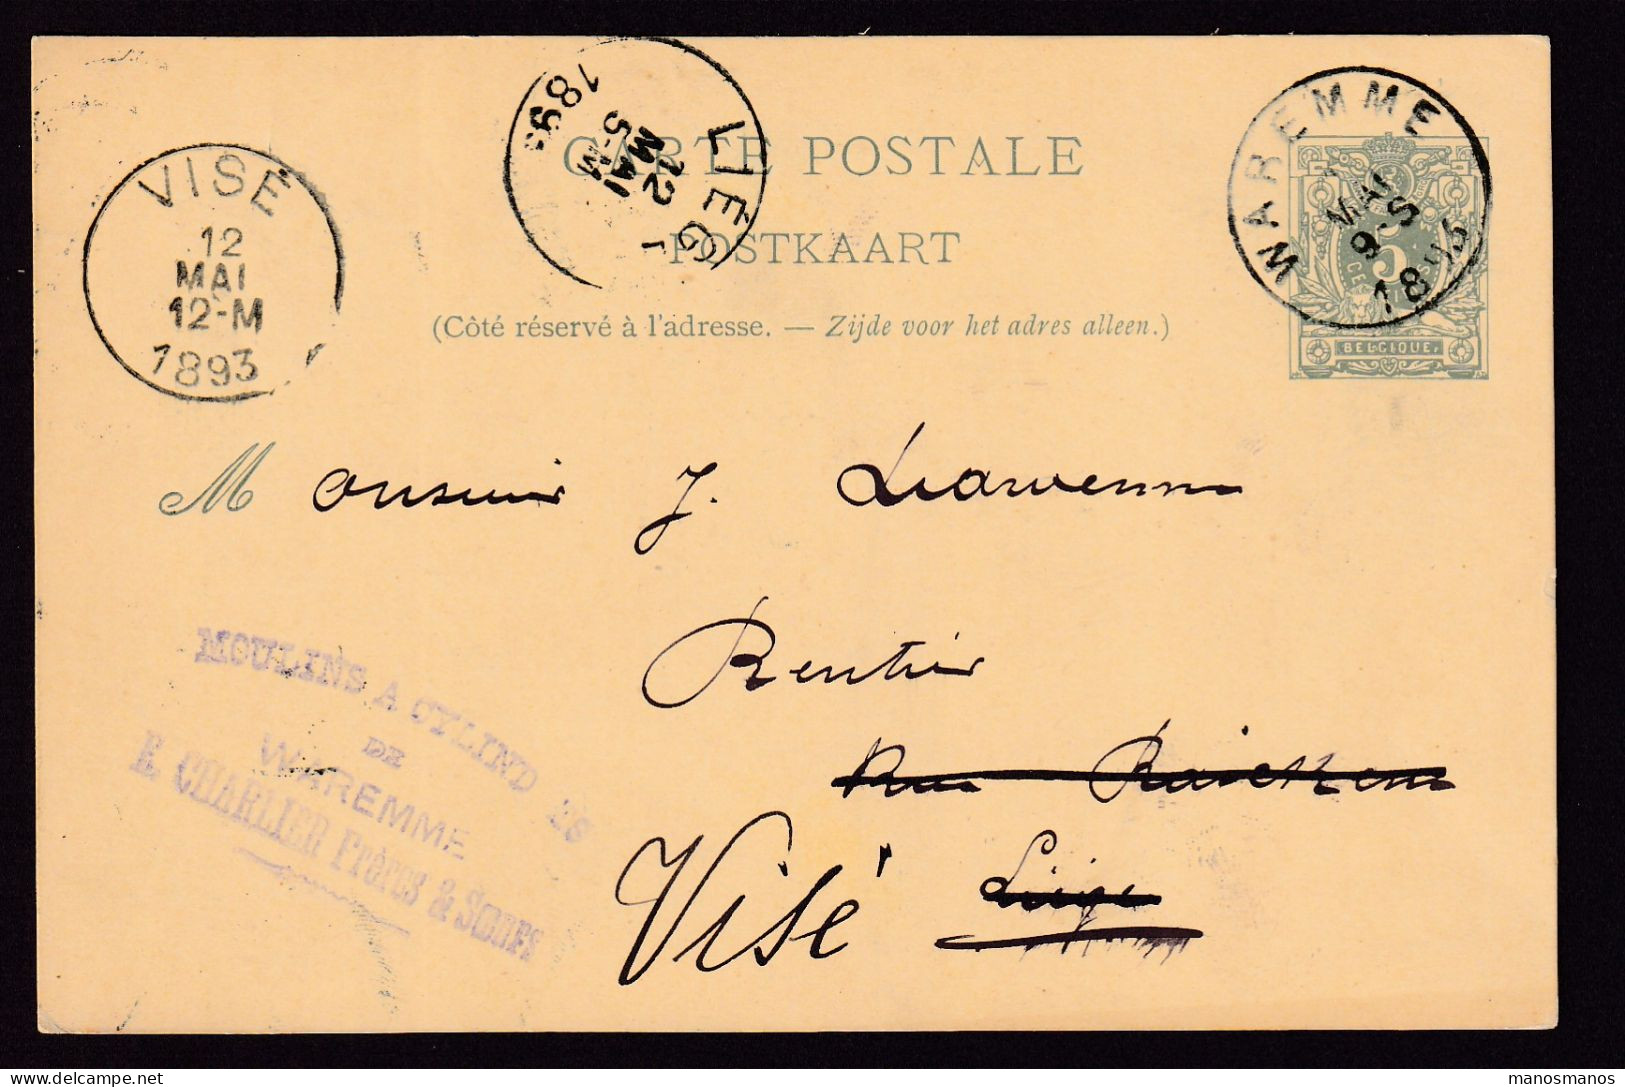 DDFF 541 - Entier Lion Couché WAREMME 1893 - Cachet Moulins à Cylindres Charlier Frères § Soeurs à WAREMME - Briefkaarten 1871-1909